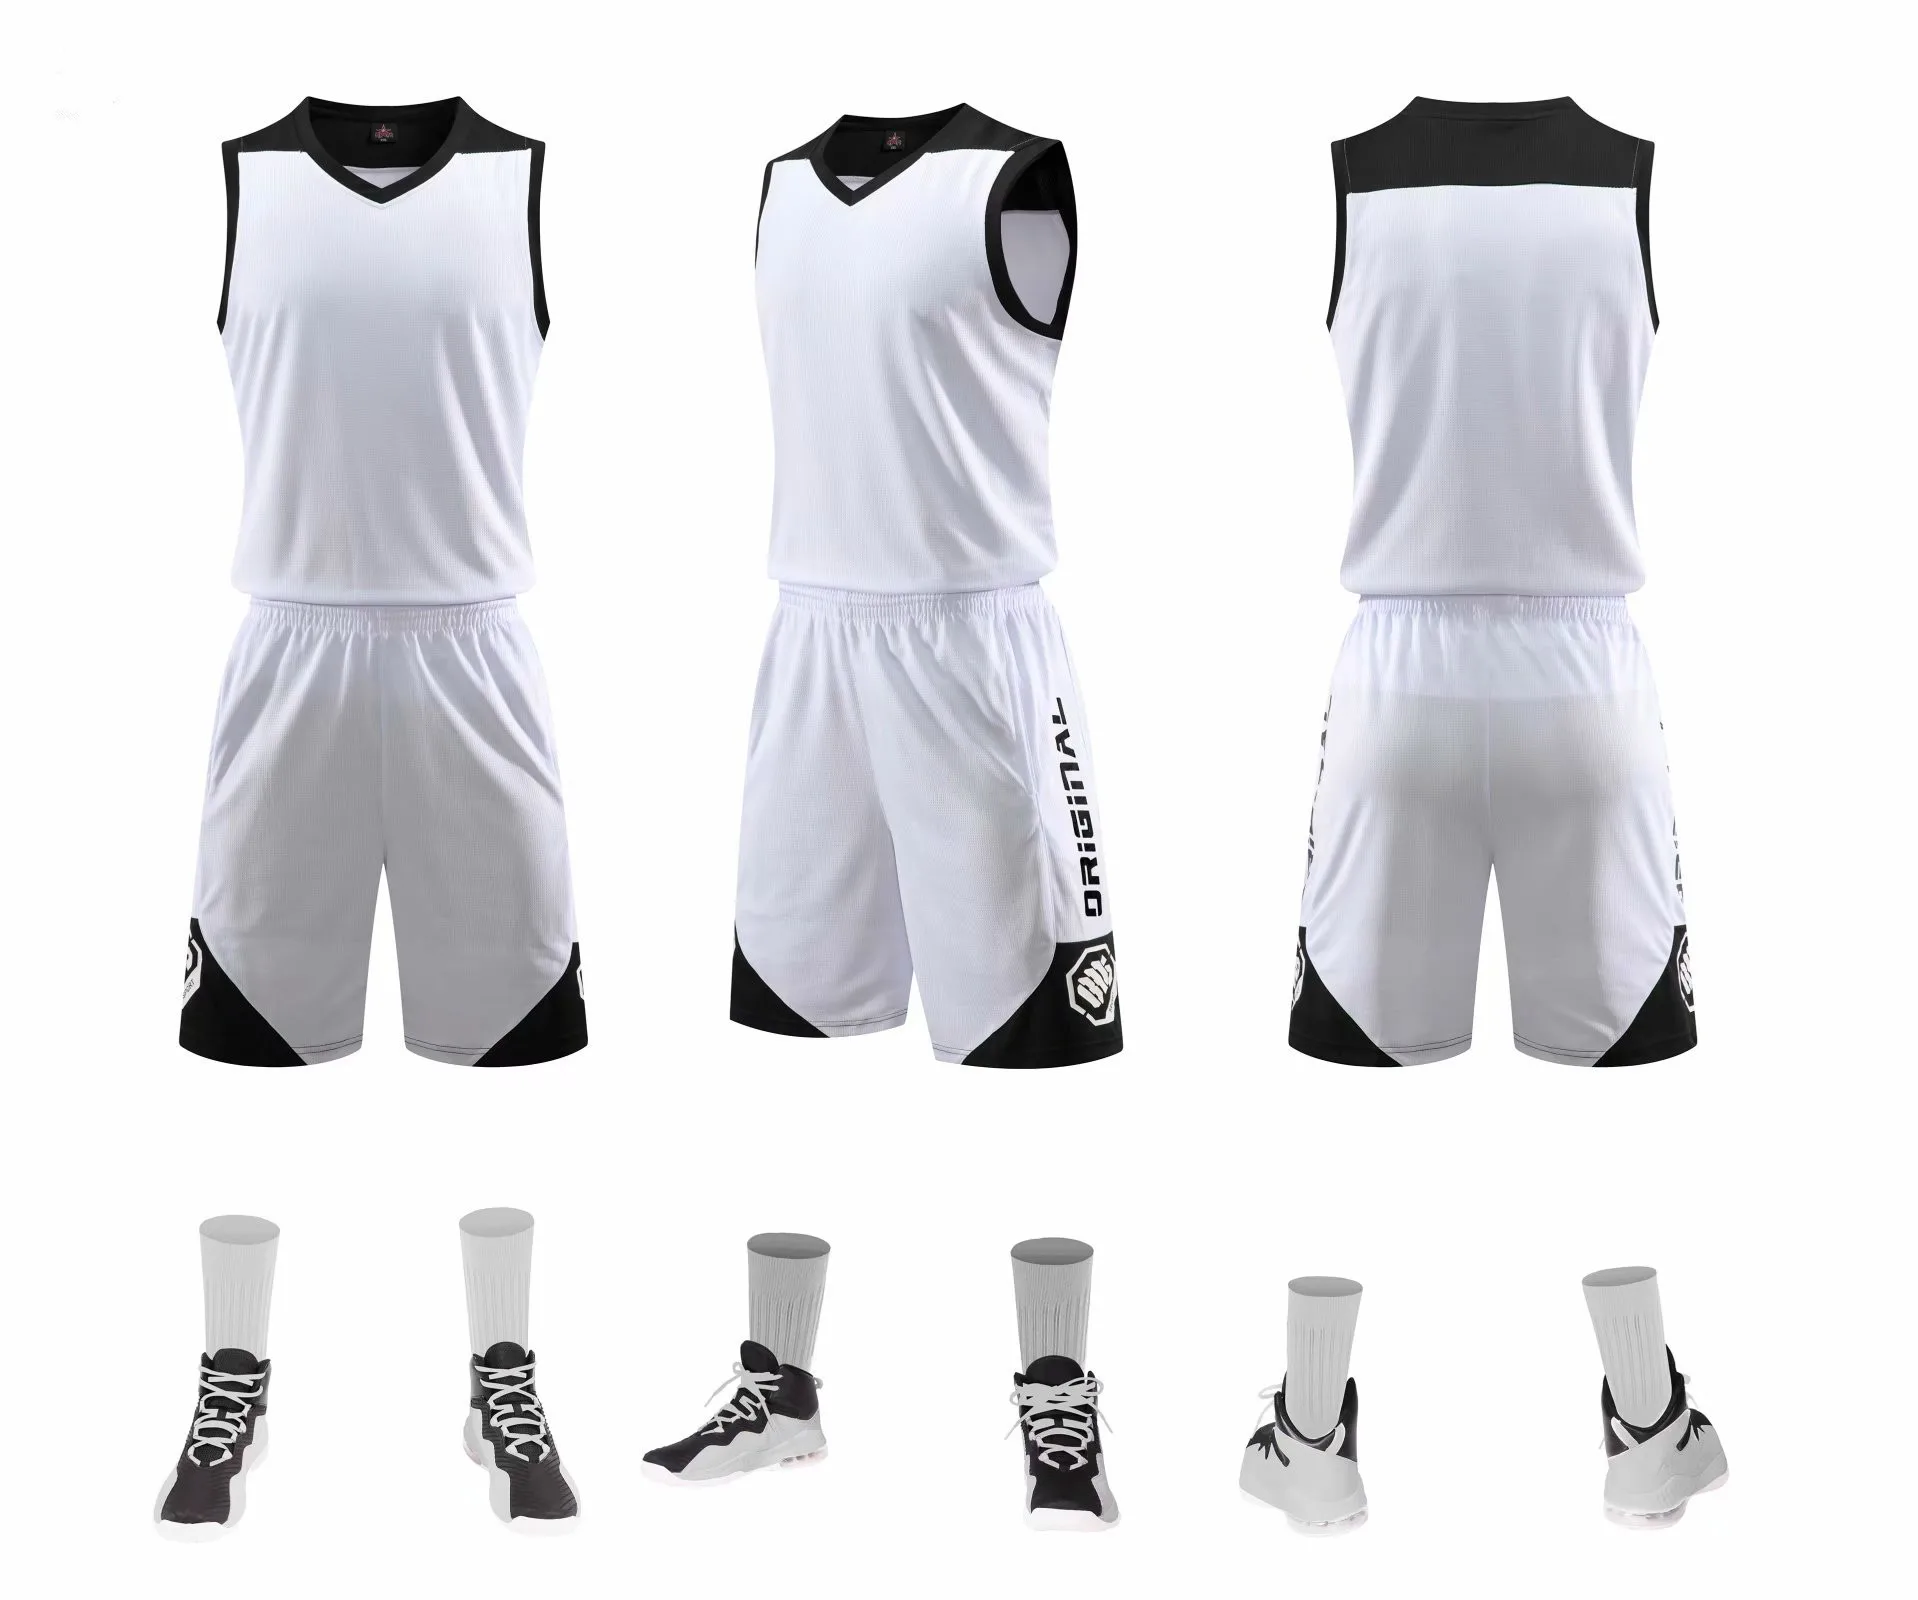 

Баскетбольная Униформа, костюм для тренировок взрослых и детей, может быть напечатан